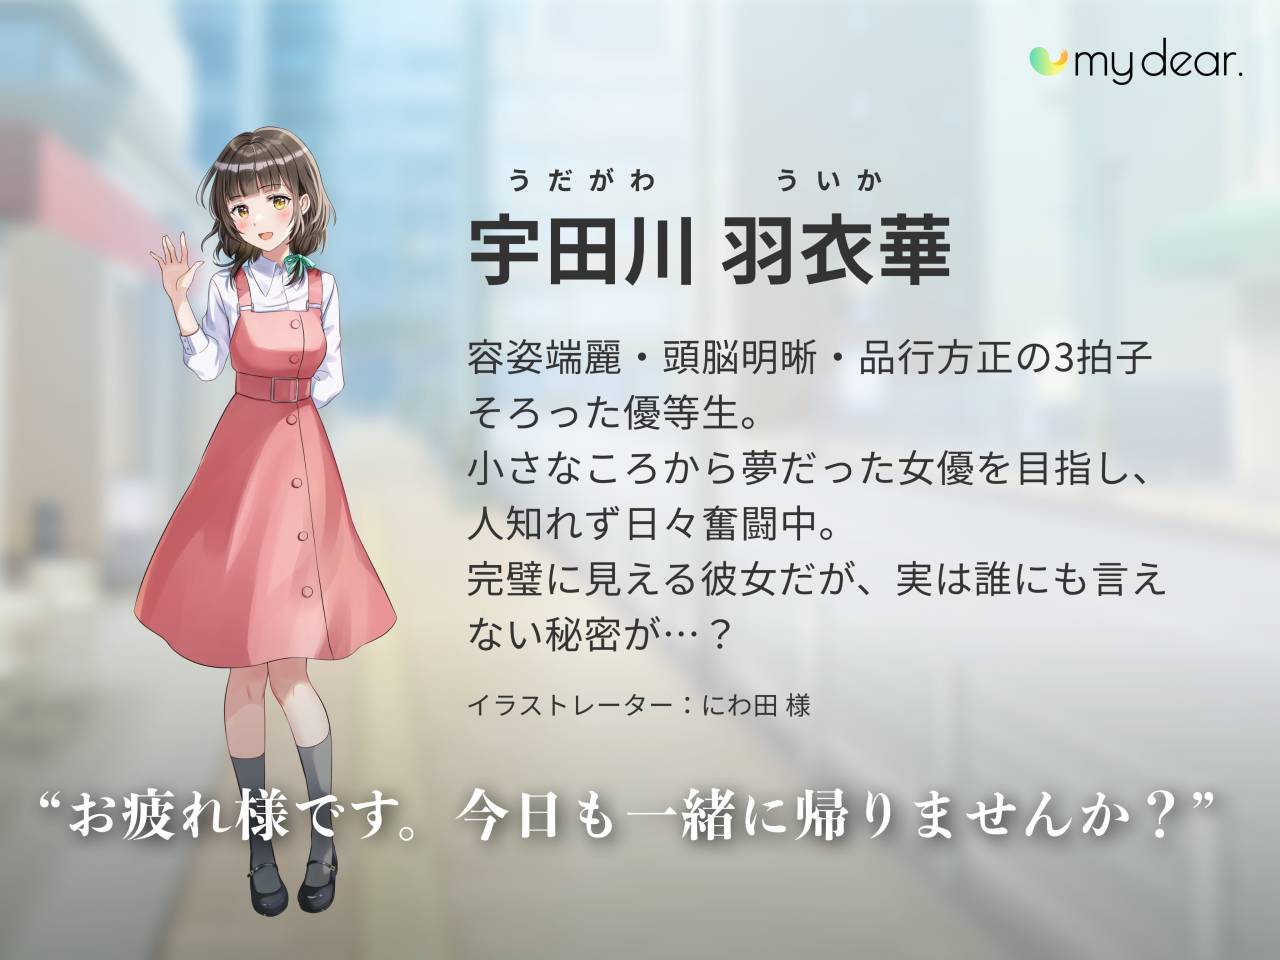 Conoce "My Dear", la app para ligar ¿Con personajes de anime? 1